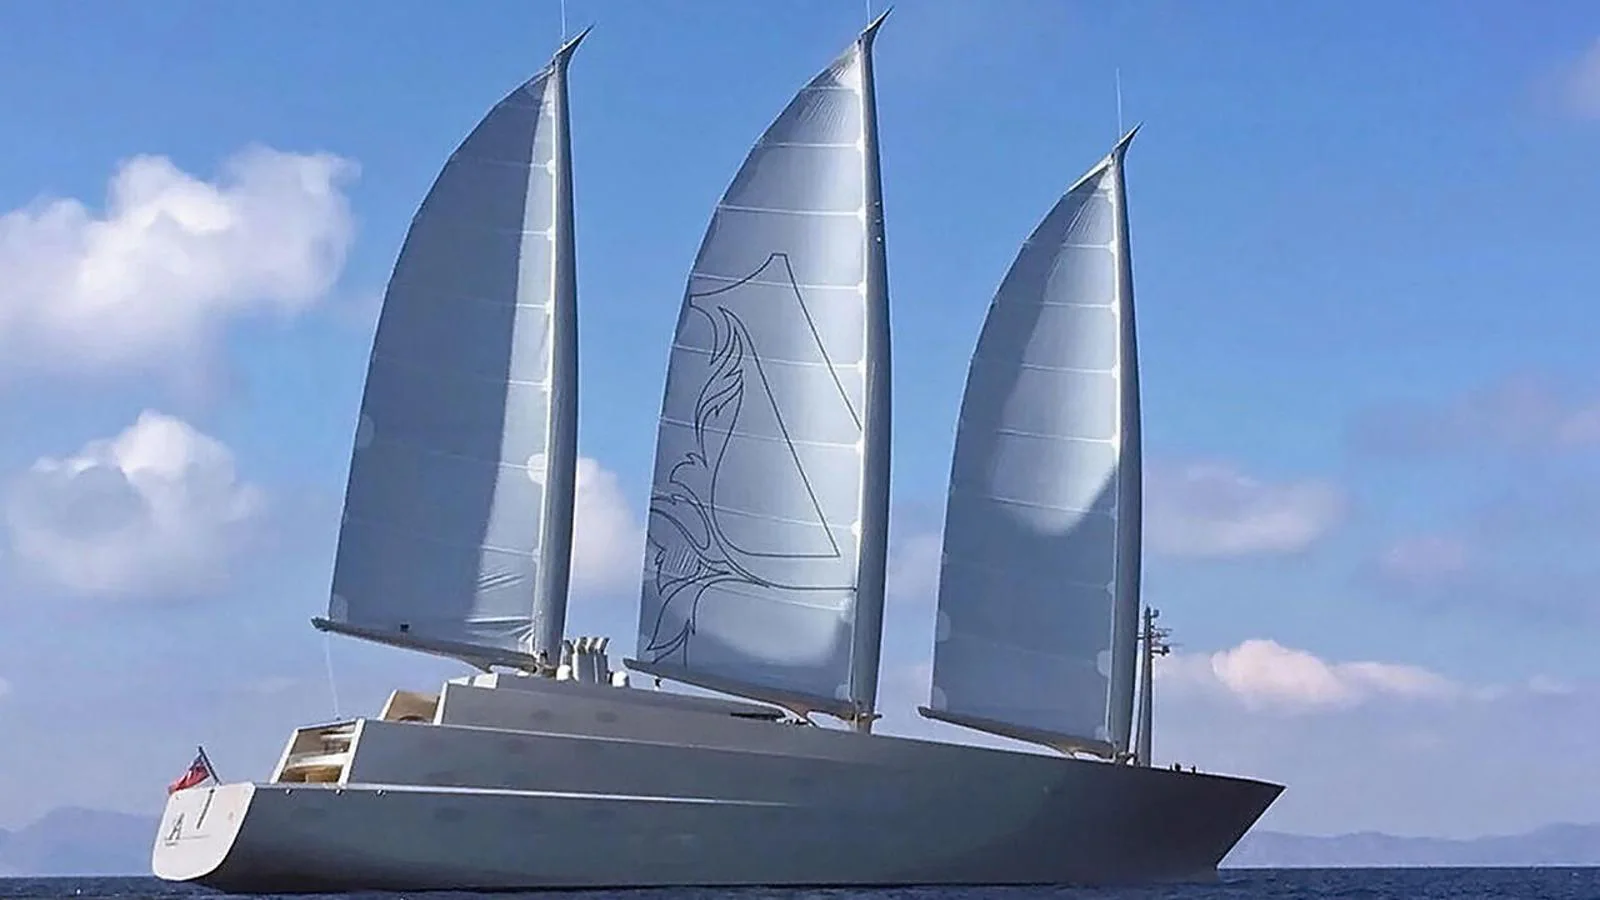 Sailing Yacht A. Un velero diseñado por el uno de los diseñadores de muebles más conocidos del mundo, el francés Philippe Stark.